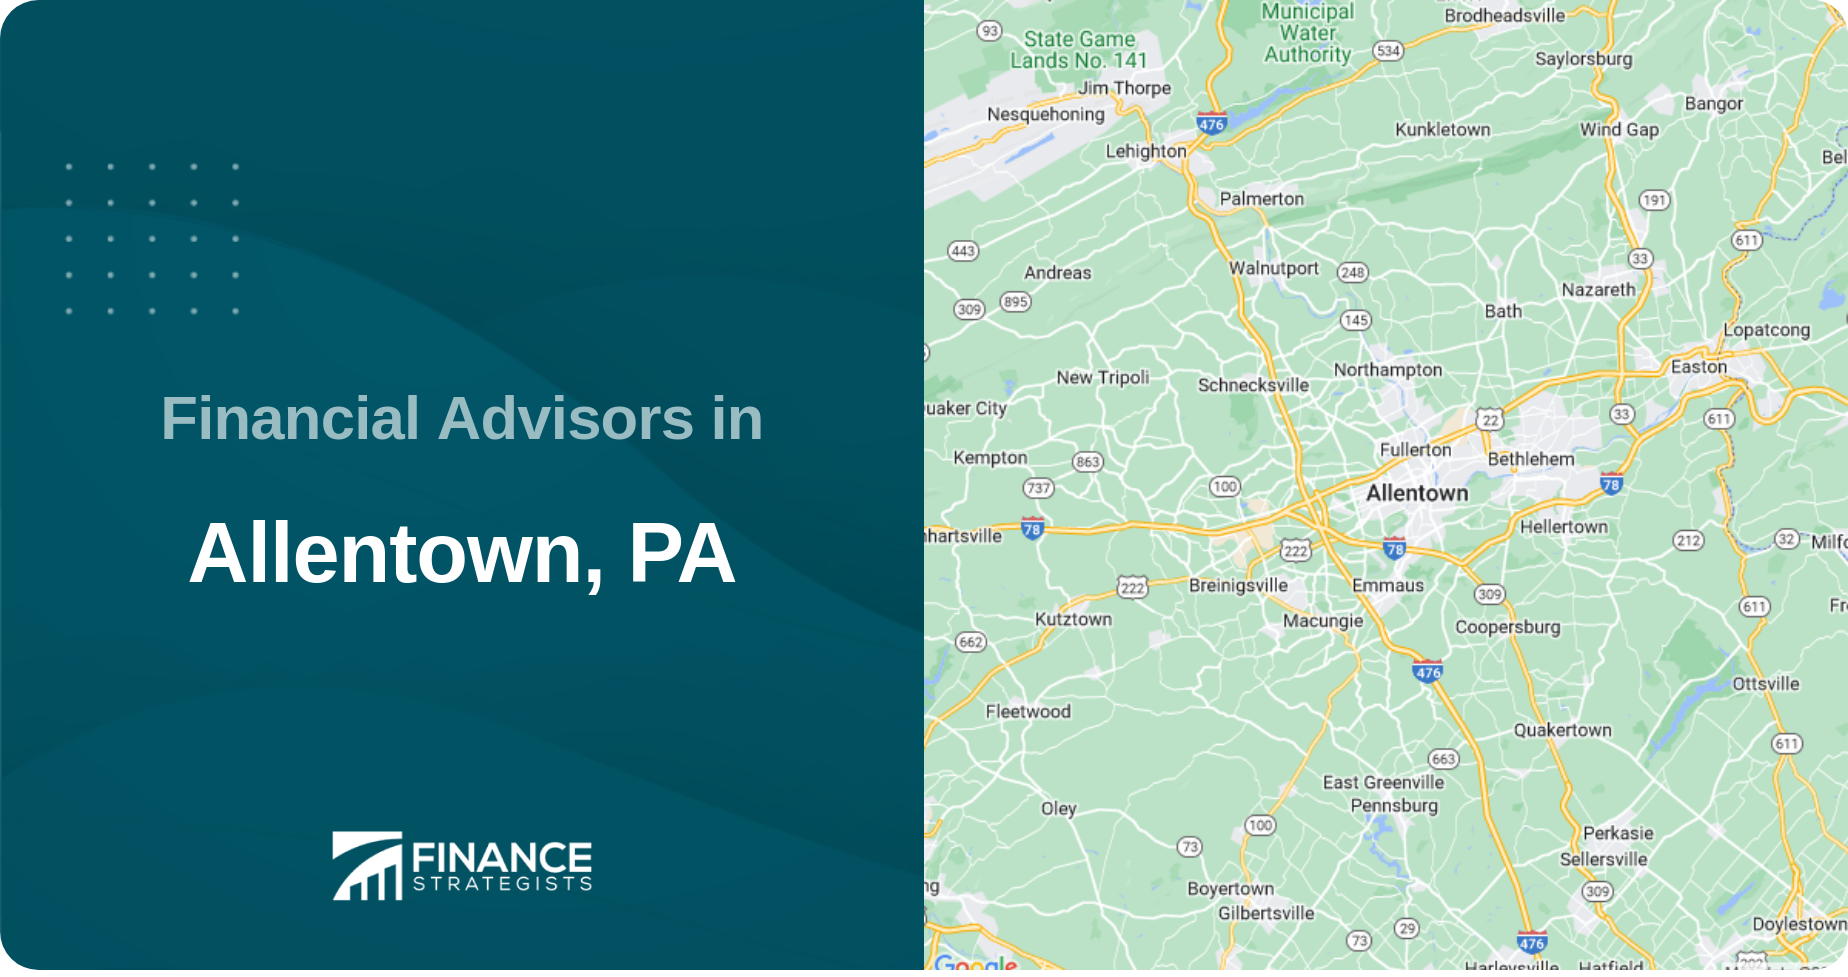 Financial Advisors in Allentown, PA